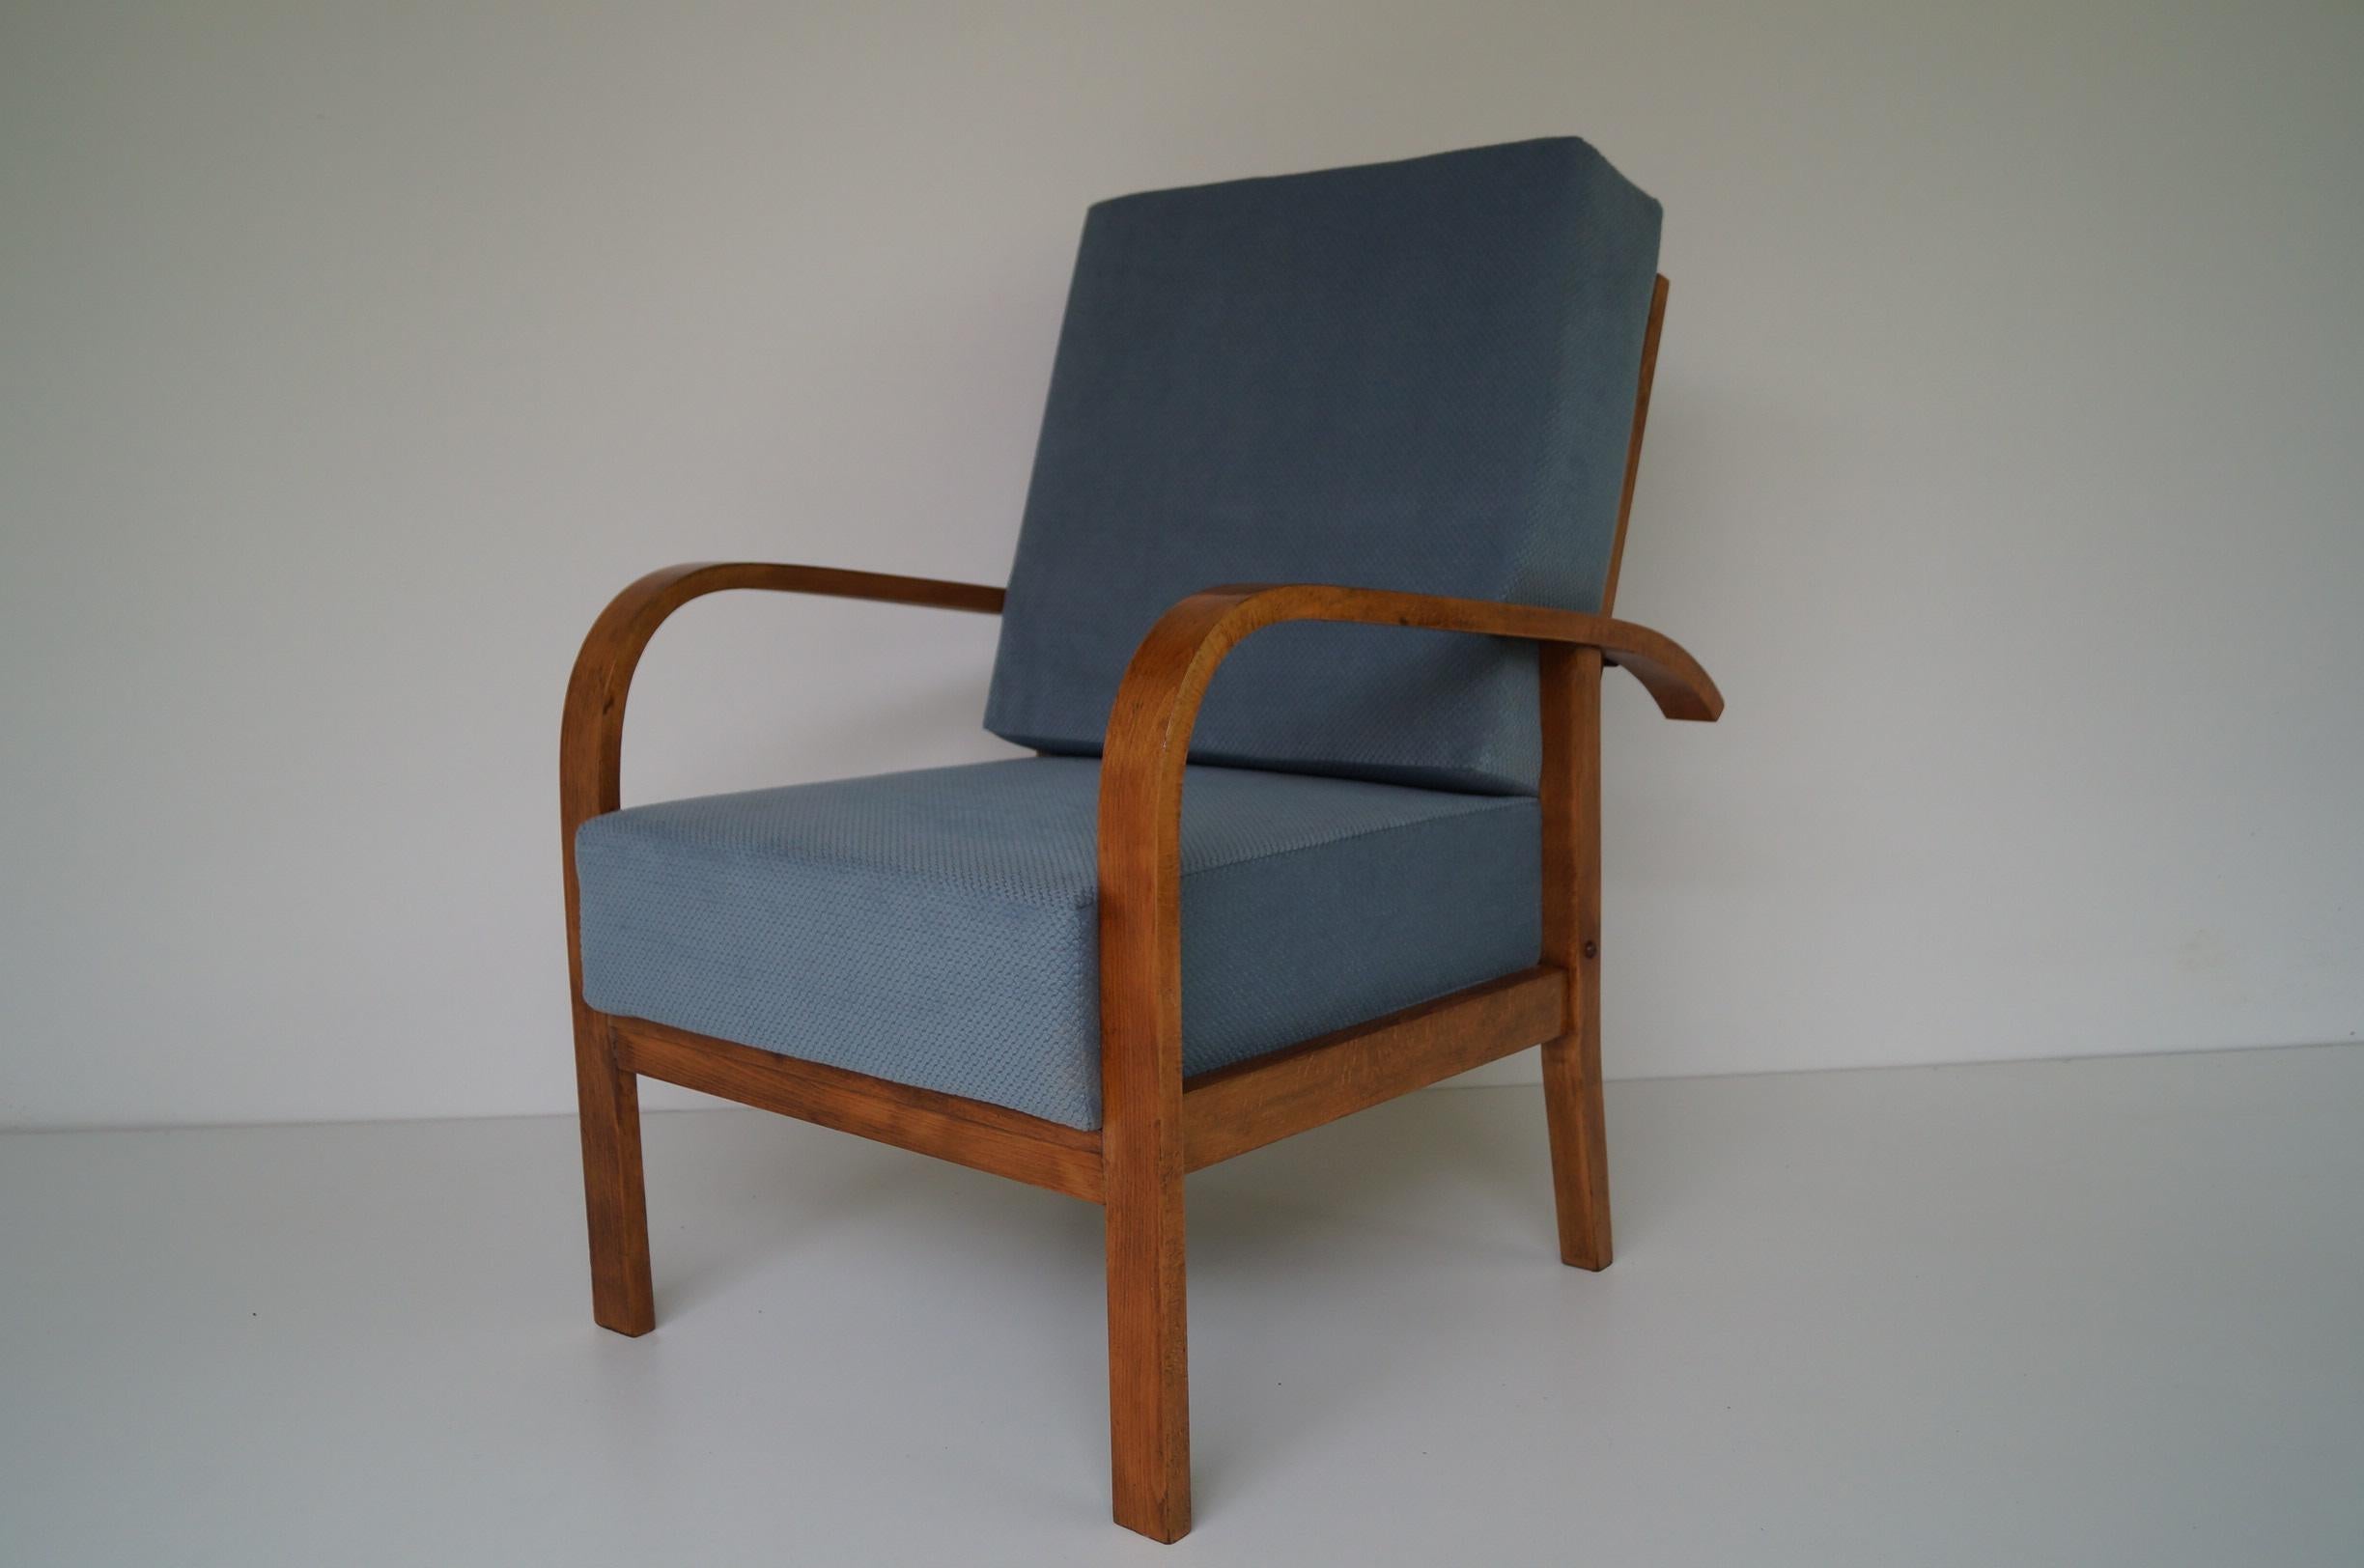 Art Deco Sessel von 1950
Jedes Möbelstück, das unsere Werkstatt verlässt, wird von Anfang bis Ende einer manuellen Renovierung unterzogen, um den ursprünglichen Zustand von vor vielen Jahren wiederherzustellen (es wurde bis auf das blanke Furnier